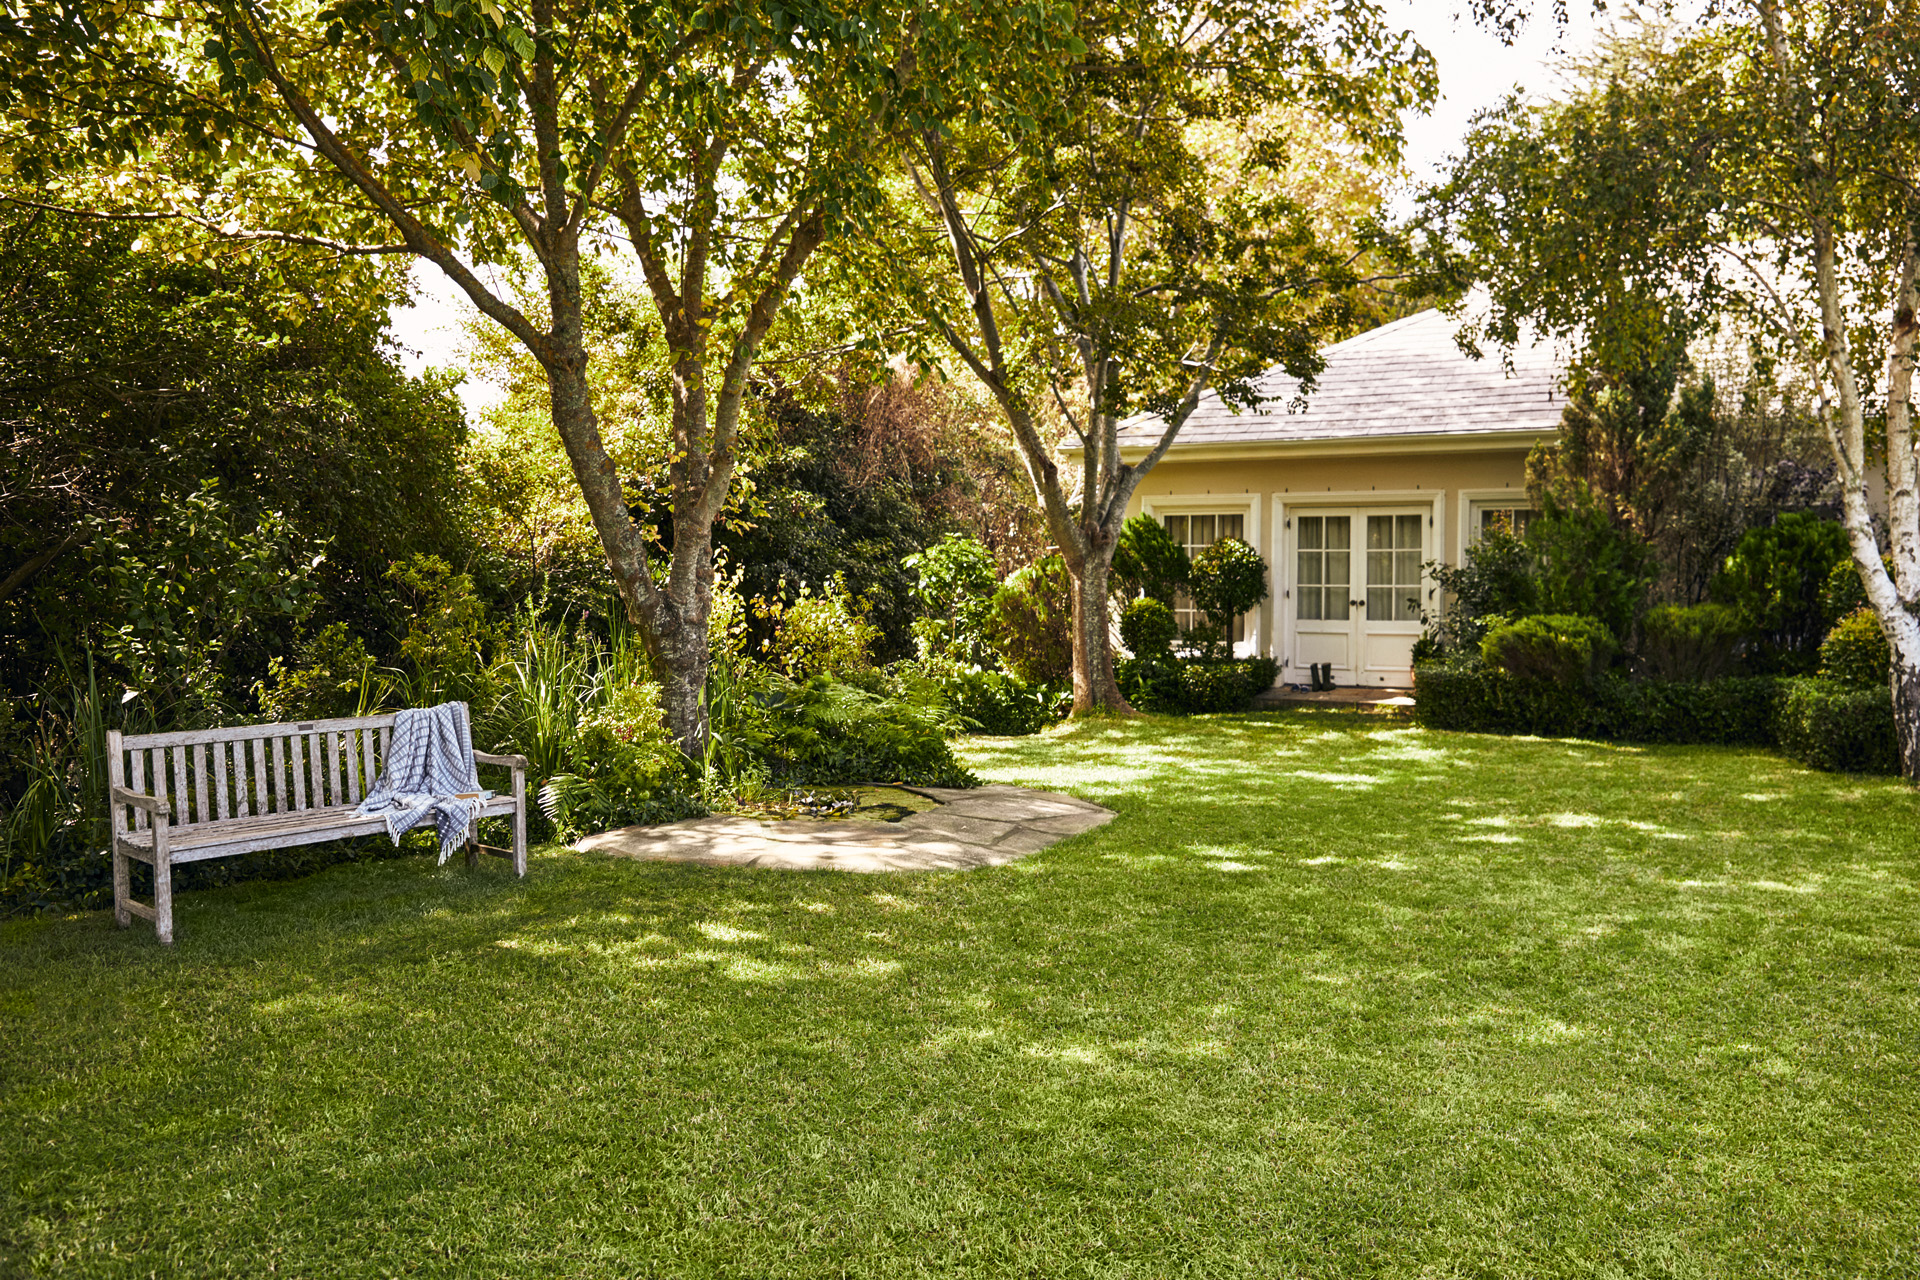 Pequena casa com espaço verde; em primeiro plano, um banco de jardim sobre relvado verde